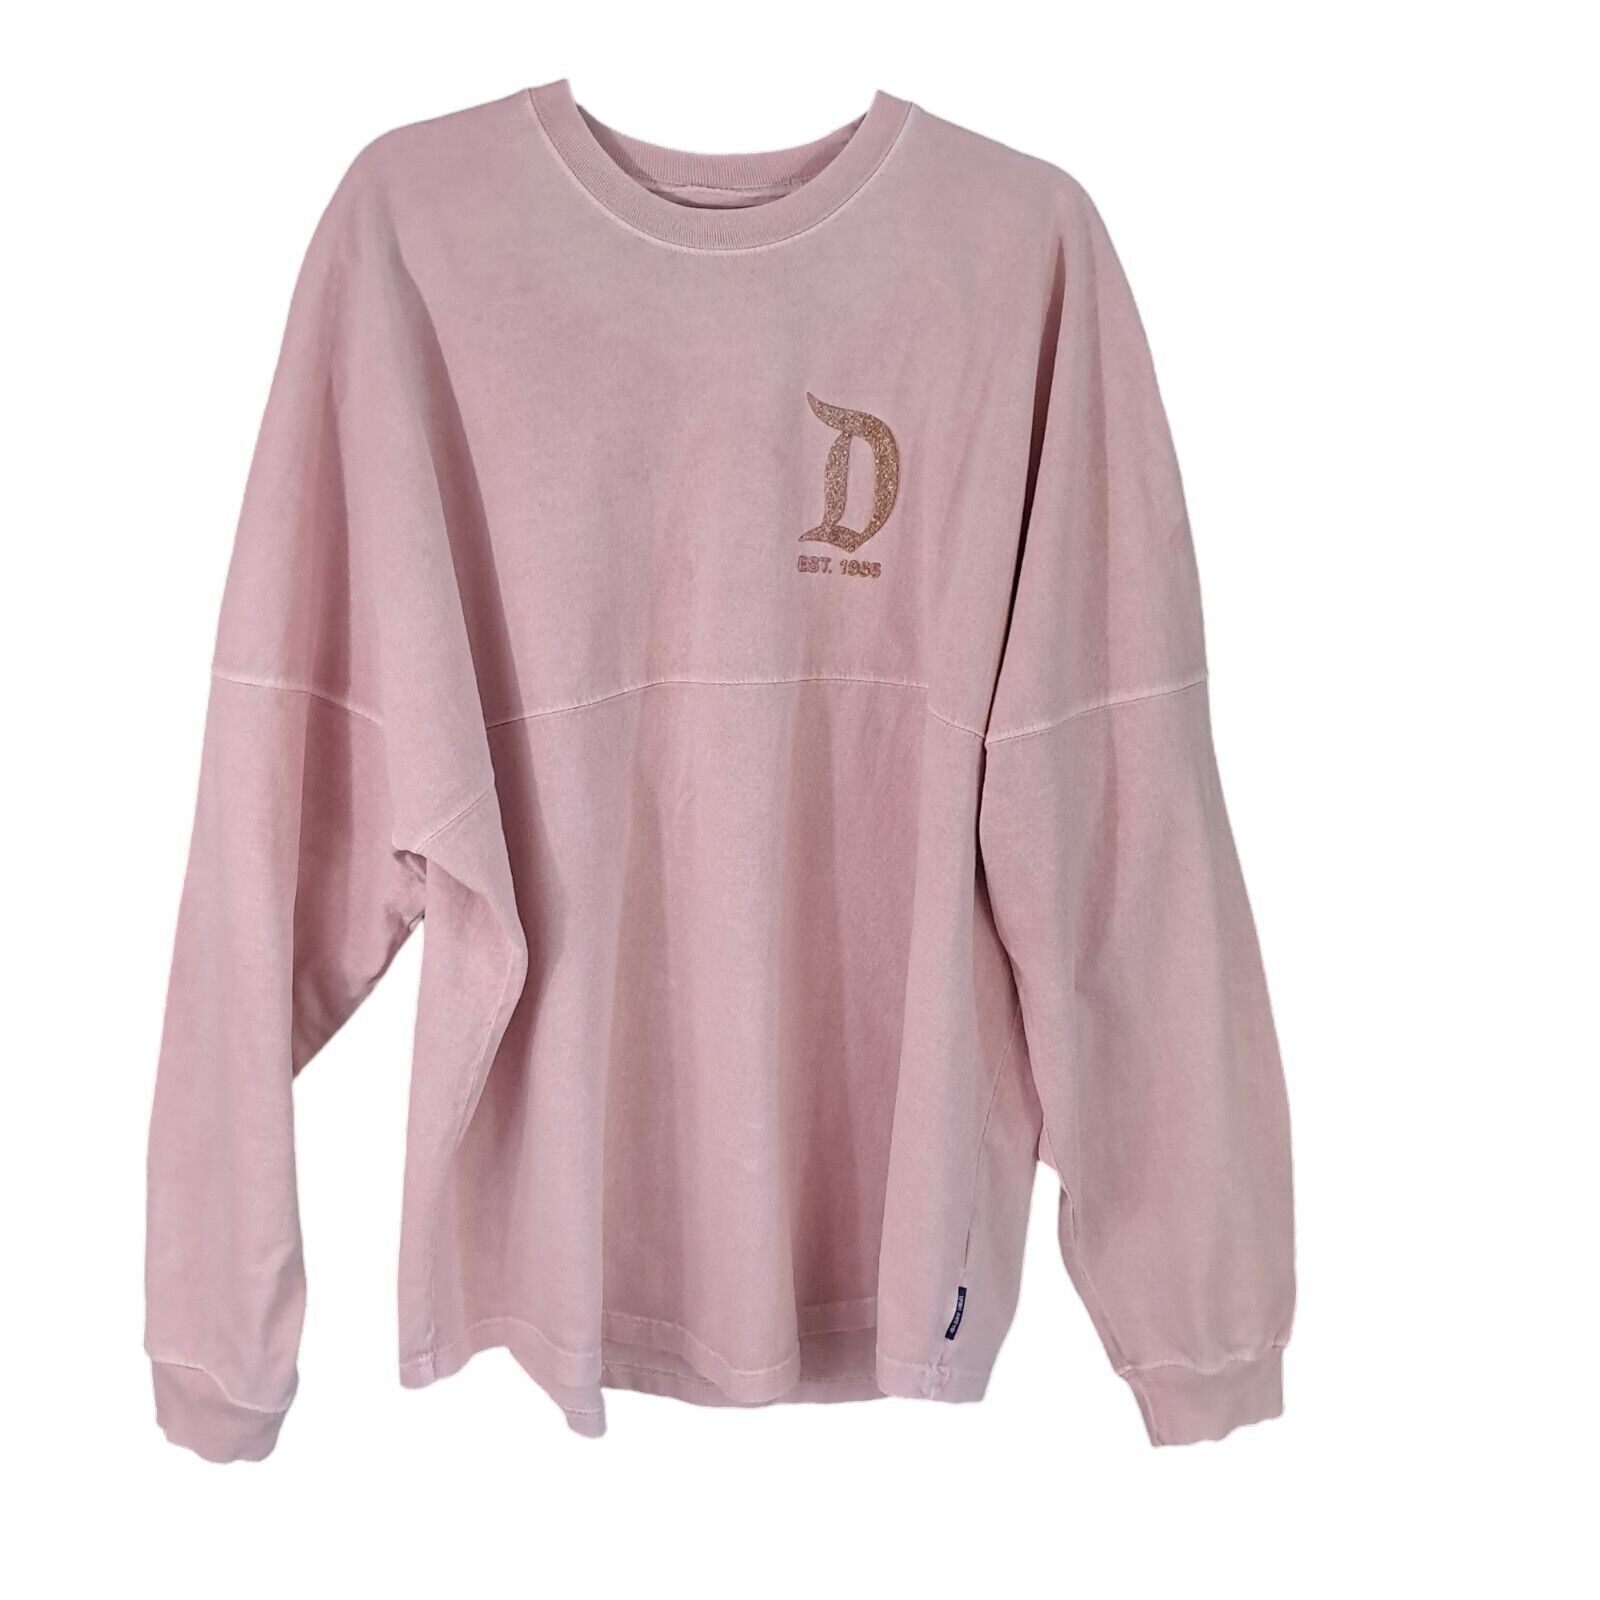 Disney Parks Rose Gold Glitter Pink Spirit Jersey Dysneyland Size XL